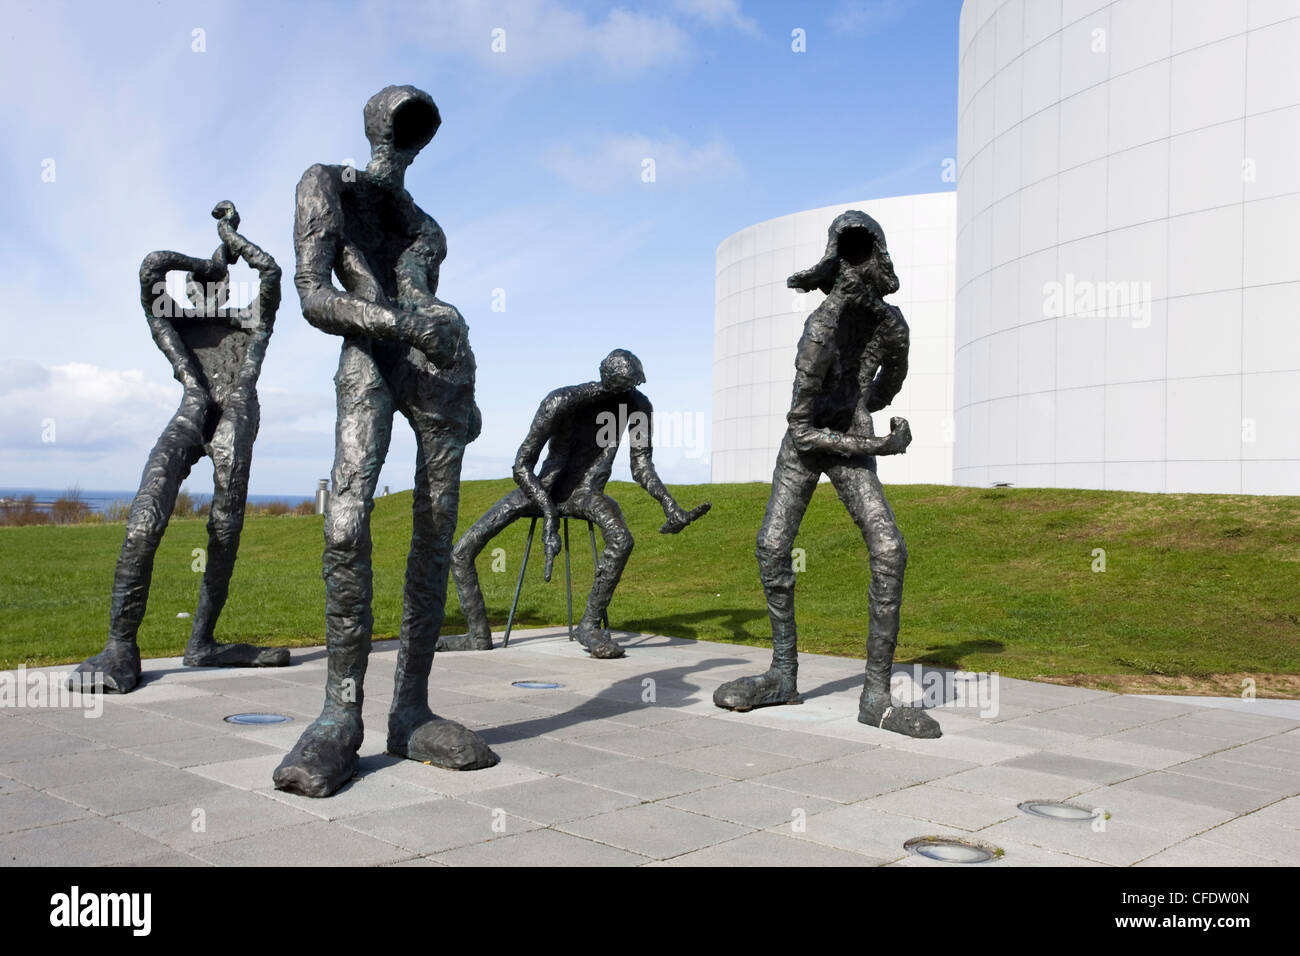 La scultura moderna di quattro figure immaginarie suonare strumenti musicali, fuori Perlan, Reykjavik, Islanda, regioni polari Foto Stock